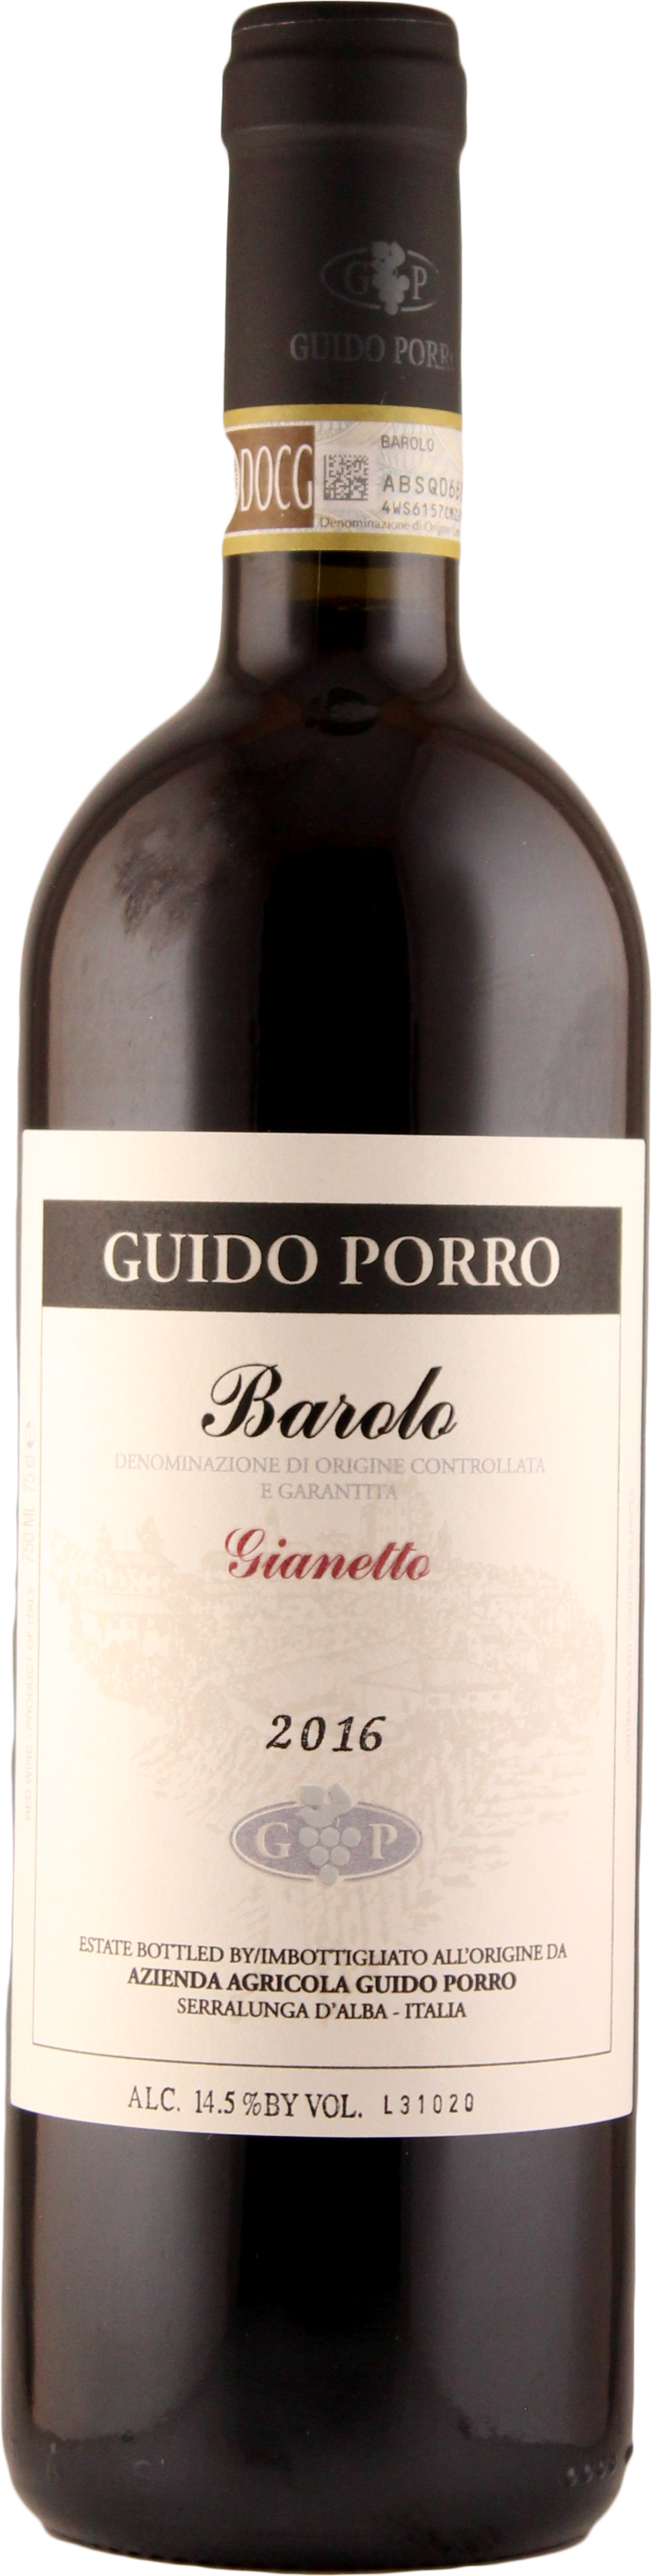 Barolo 'Gianetto' 2016 - Guido Porro/Piemont